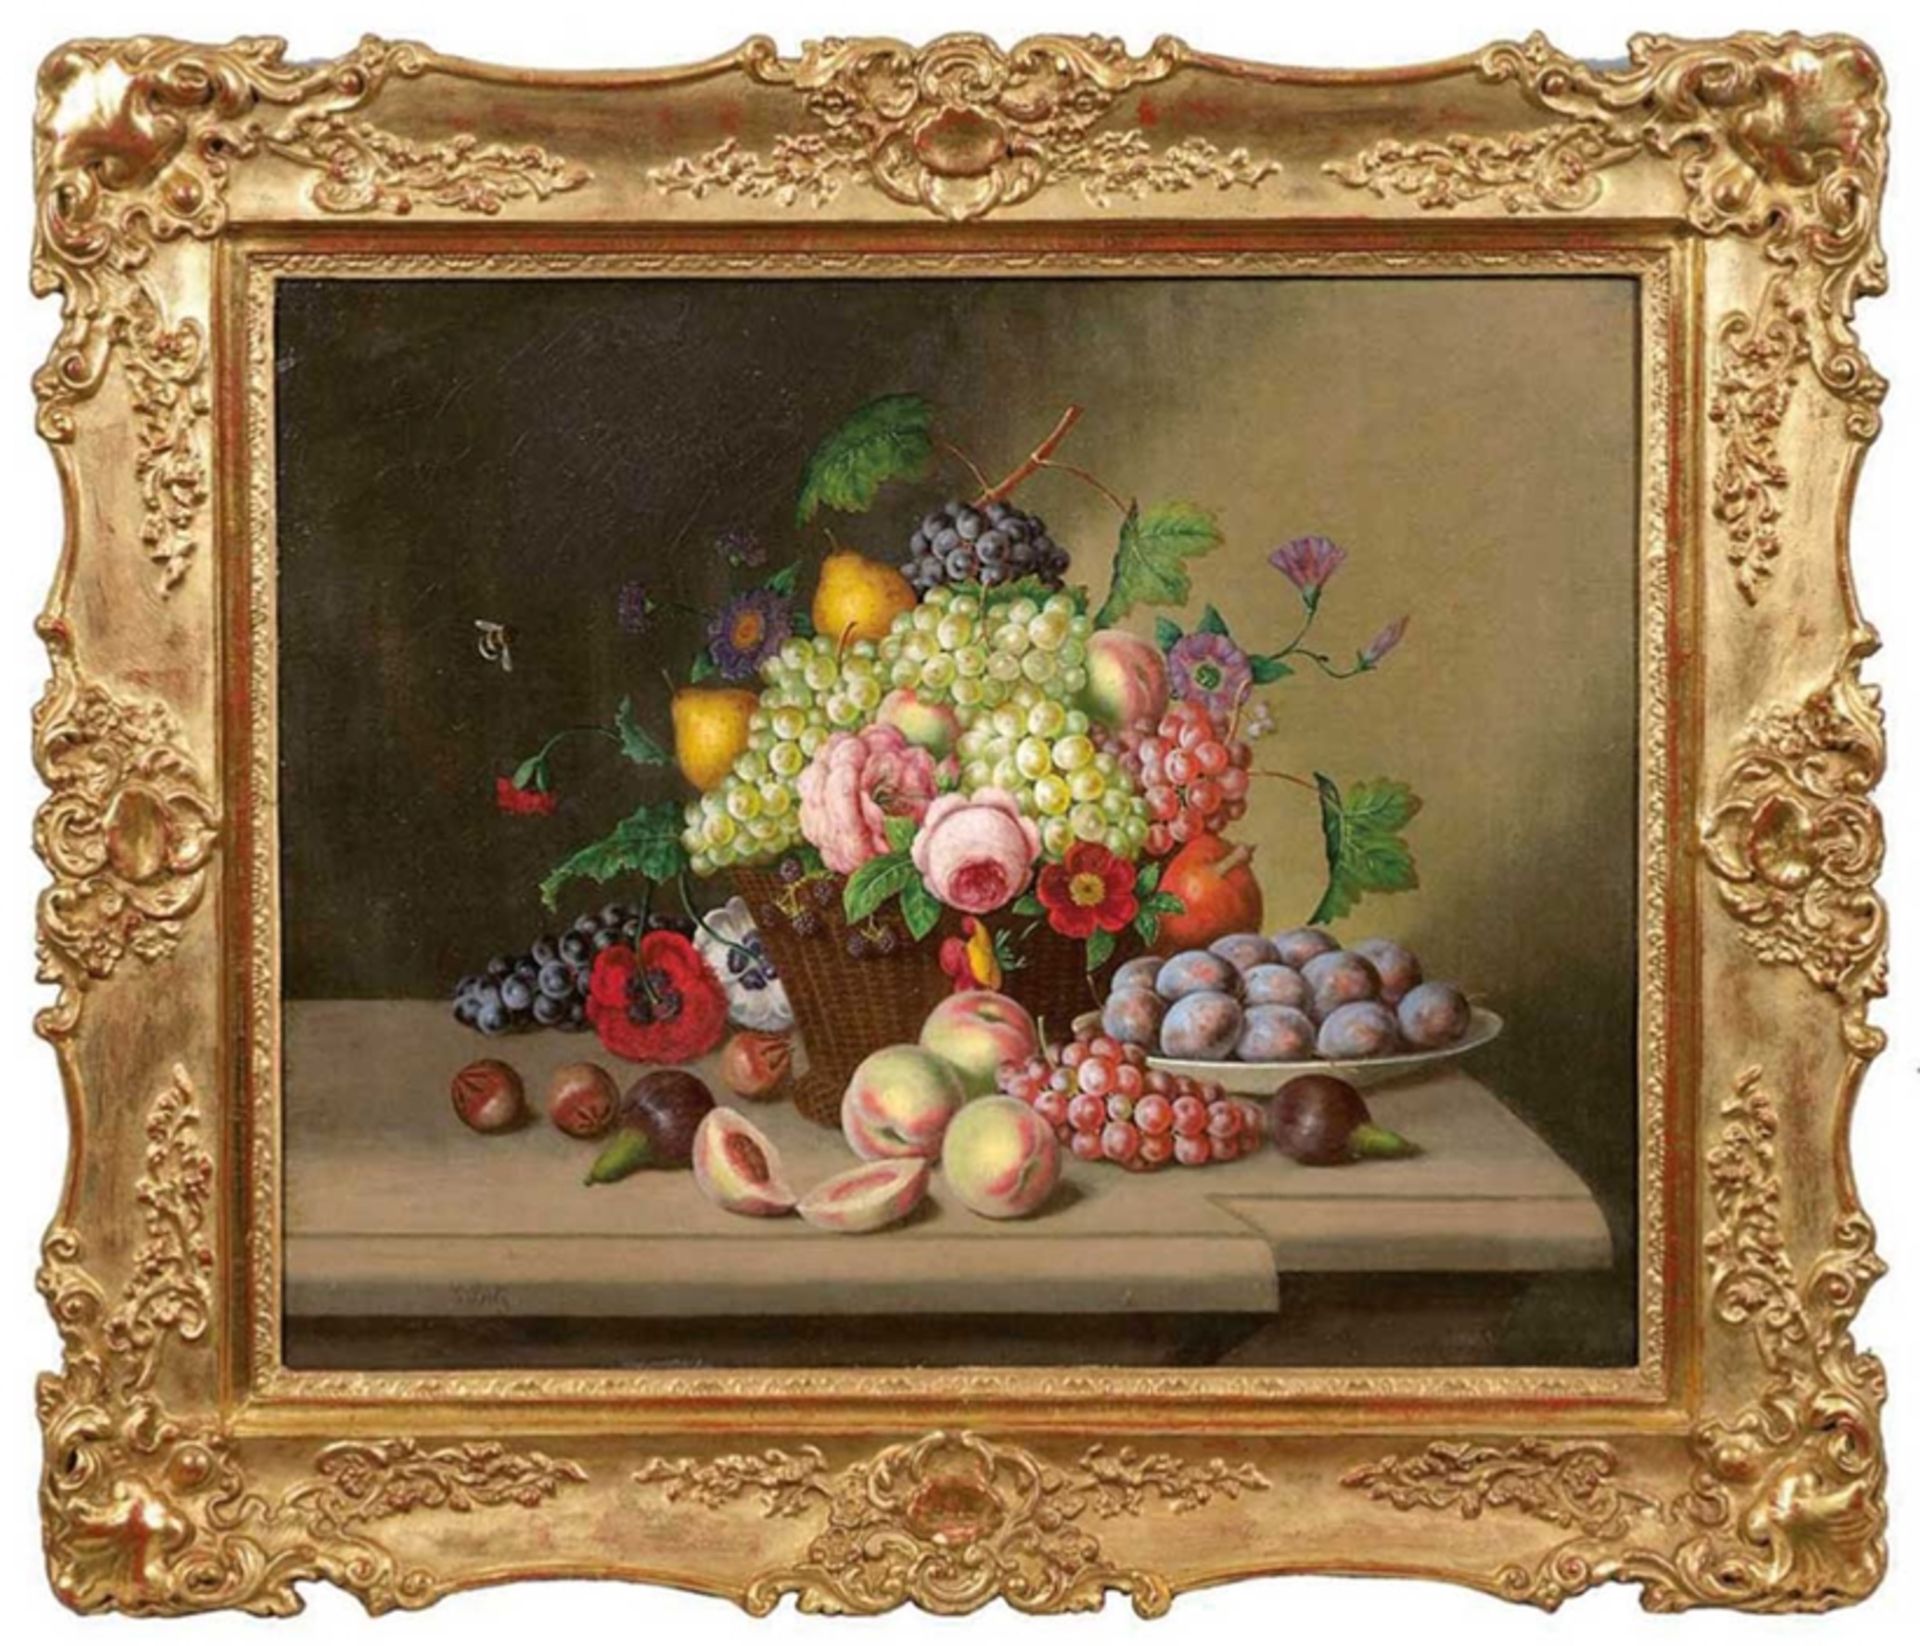 Seitz, Georg Johann (1810 Nürnberg-1870 Wien) "Stilleben mit Blumen und Früchten mit Weidenkorb", Ö